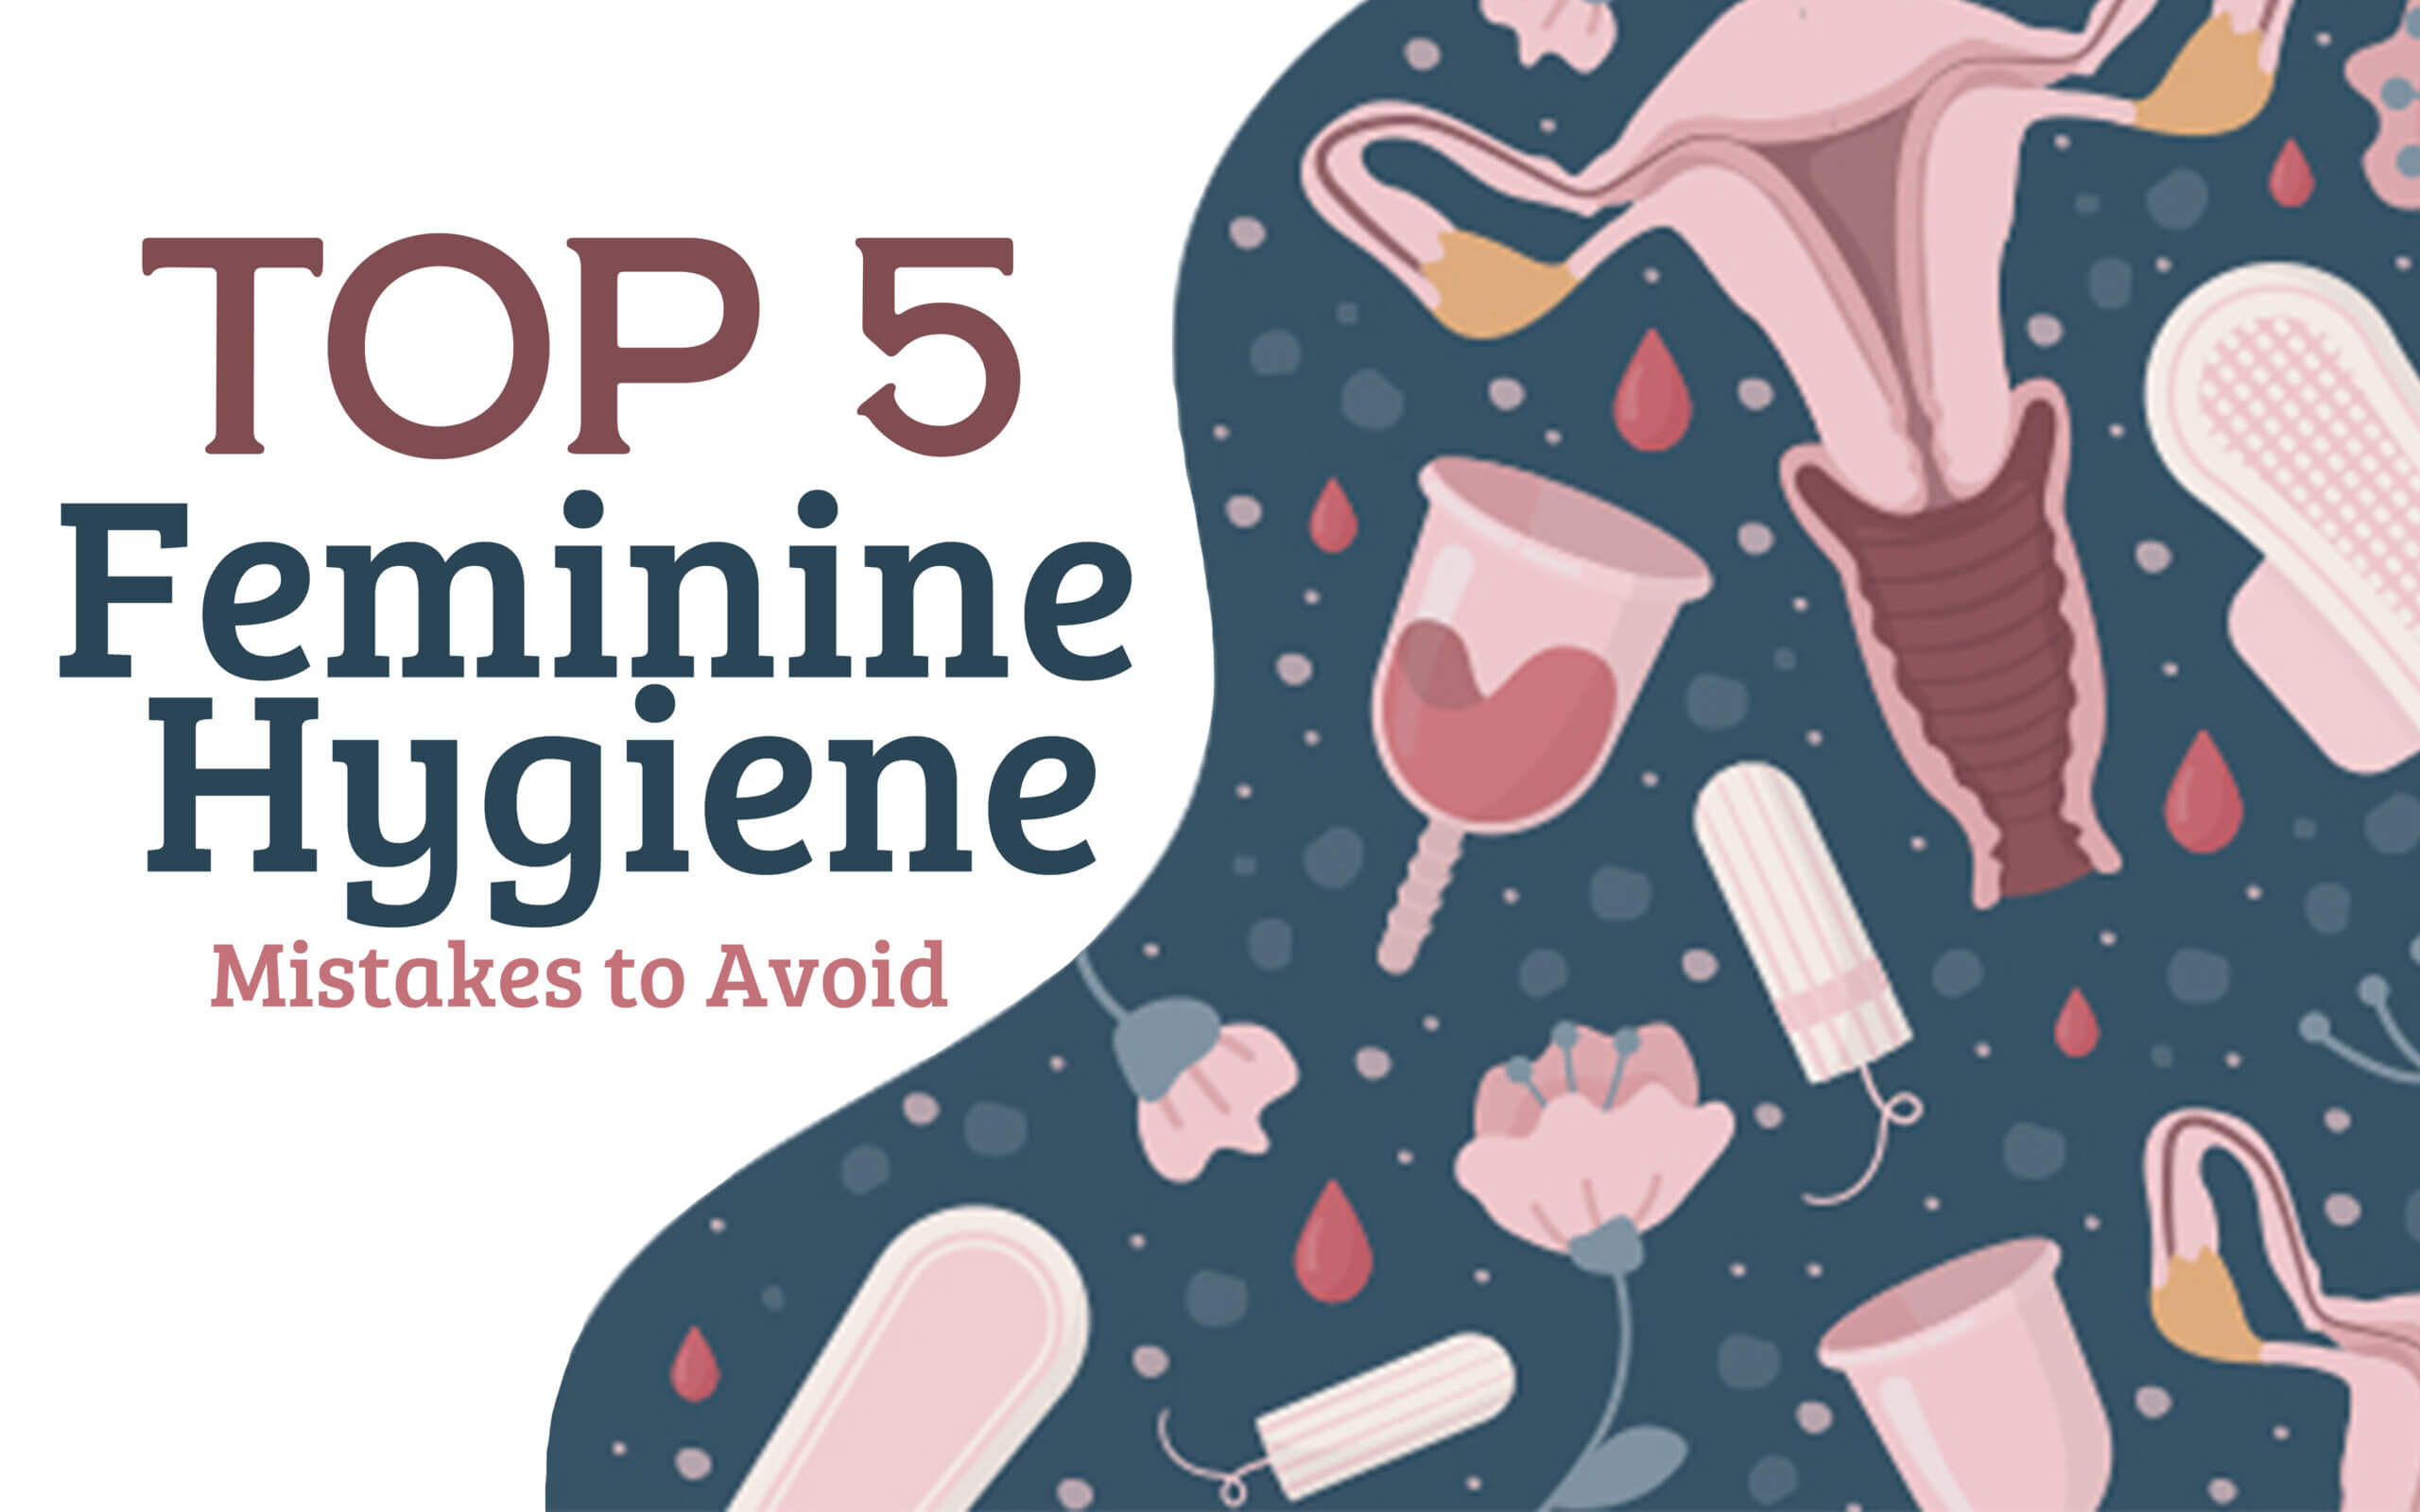 Top 5 Feminine Hygiene